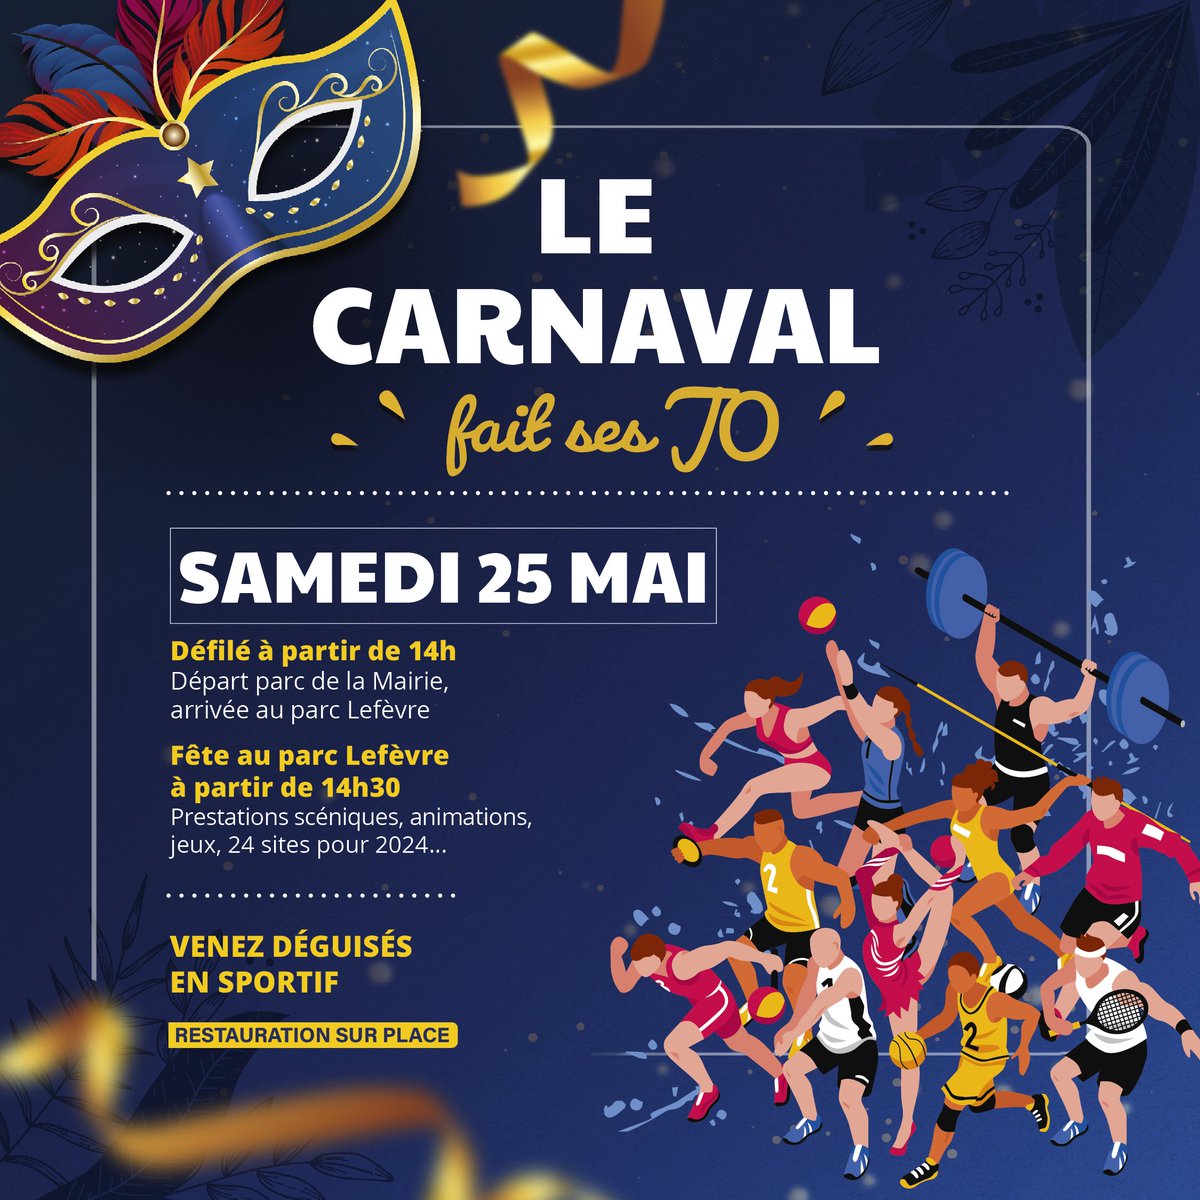 #Carnaval | Livry-Gargan vous donne rdv le samedi 25 mai pour un grand défilé dans les rues de la Ville, suivi de nombreuses animations au Parc Lefèvre. Cette année, cap sur les Jeux Olympiques !

Le programme : livry-gargan.fr/14-332/agenda/…

@GrandParisMGP @seinesaintdenis @Paris2024